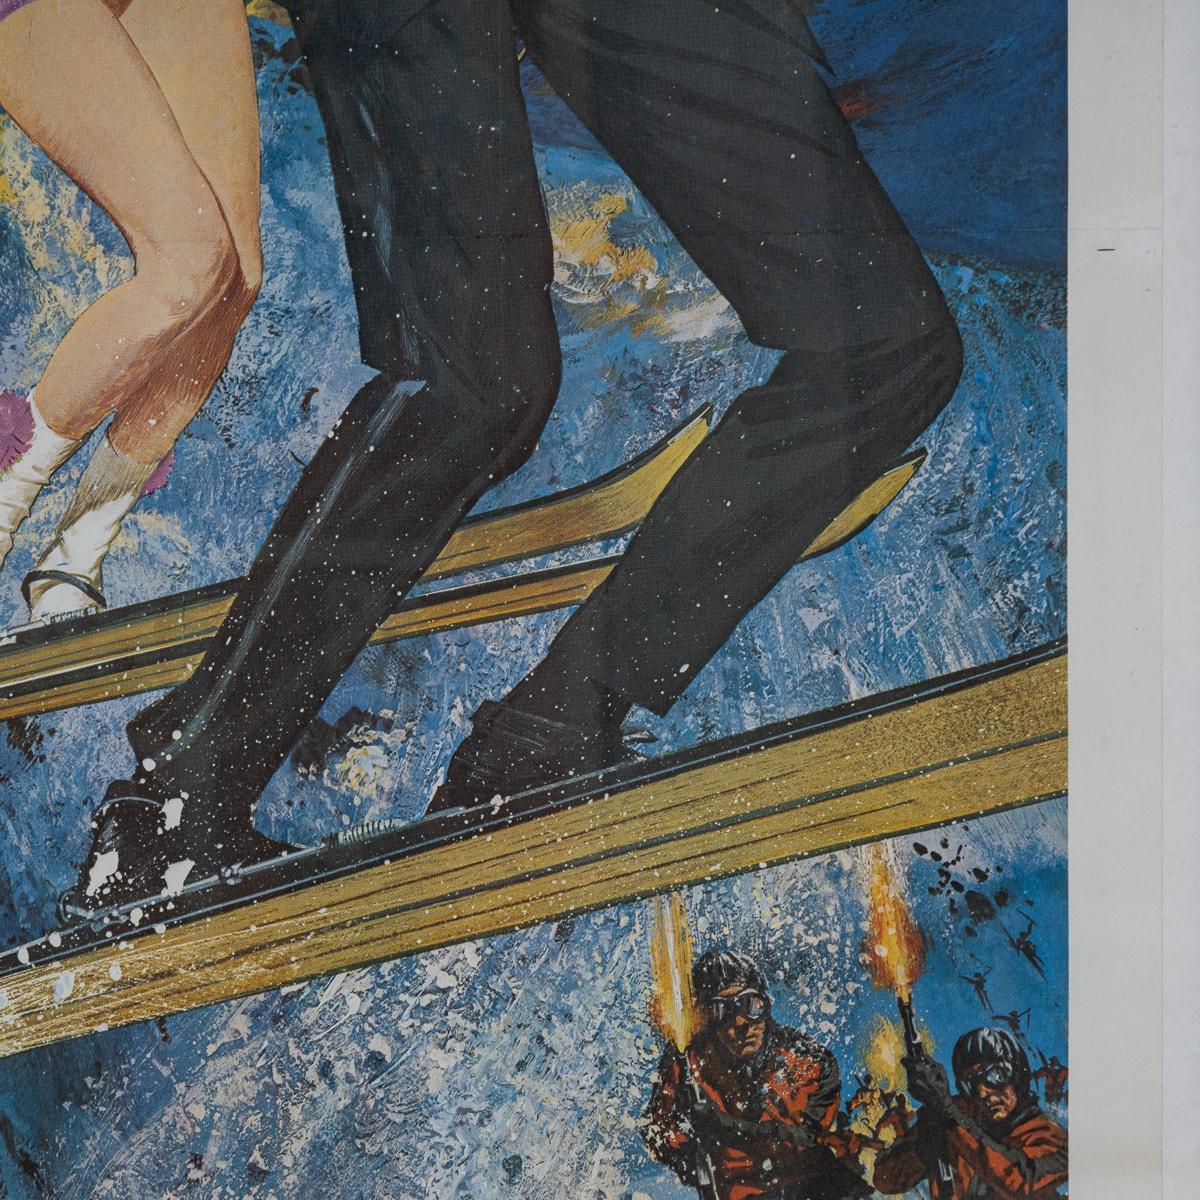 U.S Release James Bond 007 'On Her Majesty's Secret Service' Poster c.1969 For Sale 5